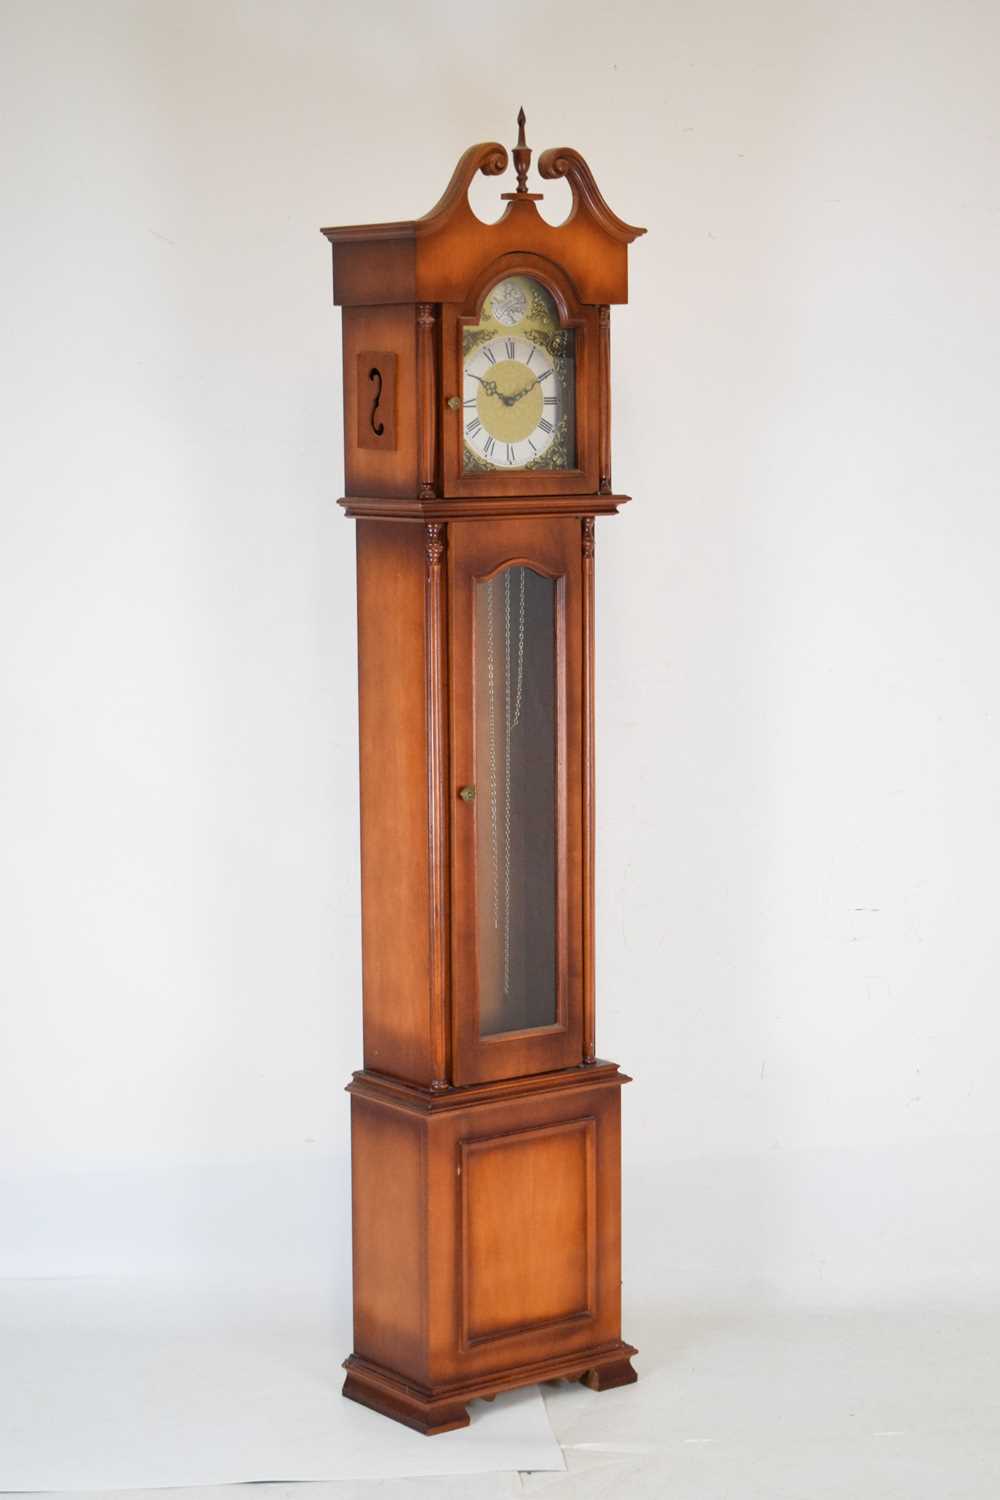 Reproduction chiming longcase clock